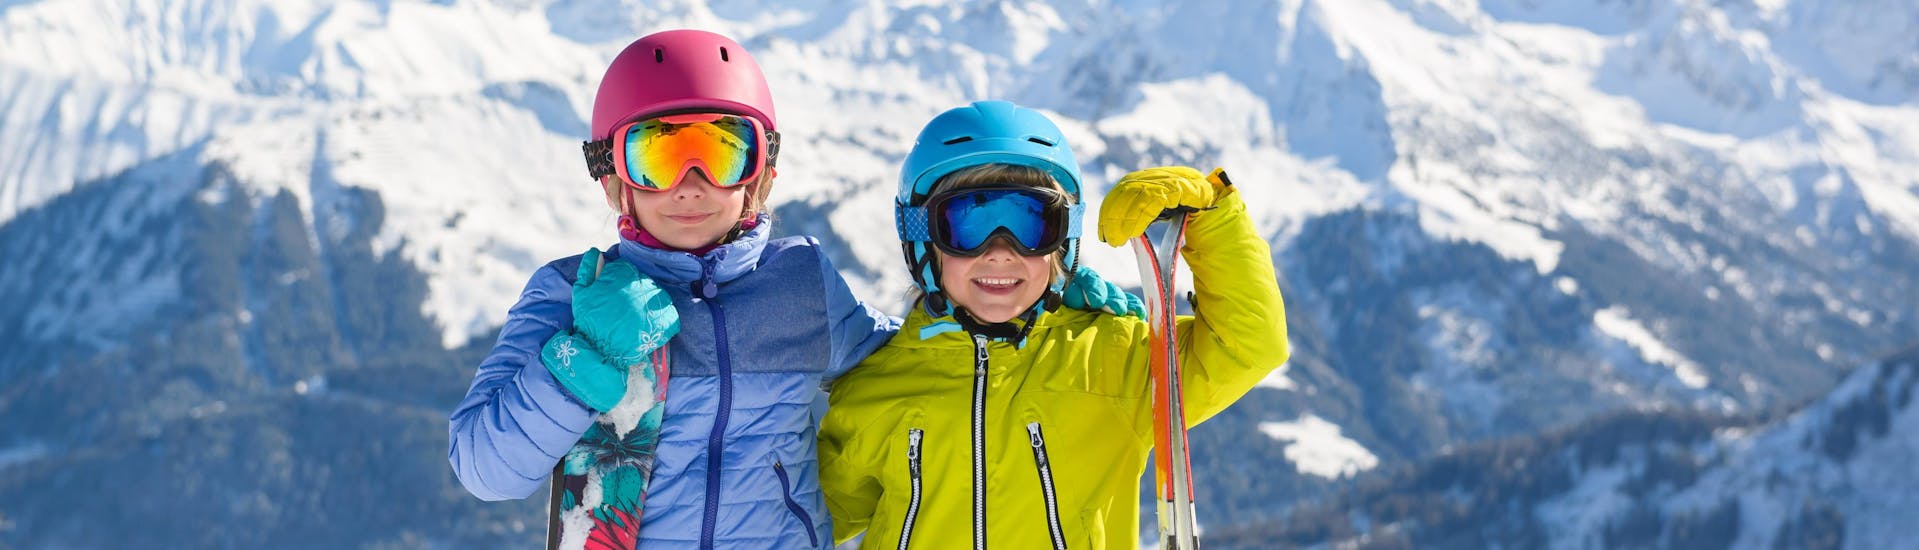 Dos niños con equipo de esquí completo sonríen a la cámara mientras se preparan para sus clases de esquí en la cima de la montaña.